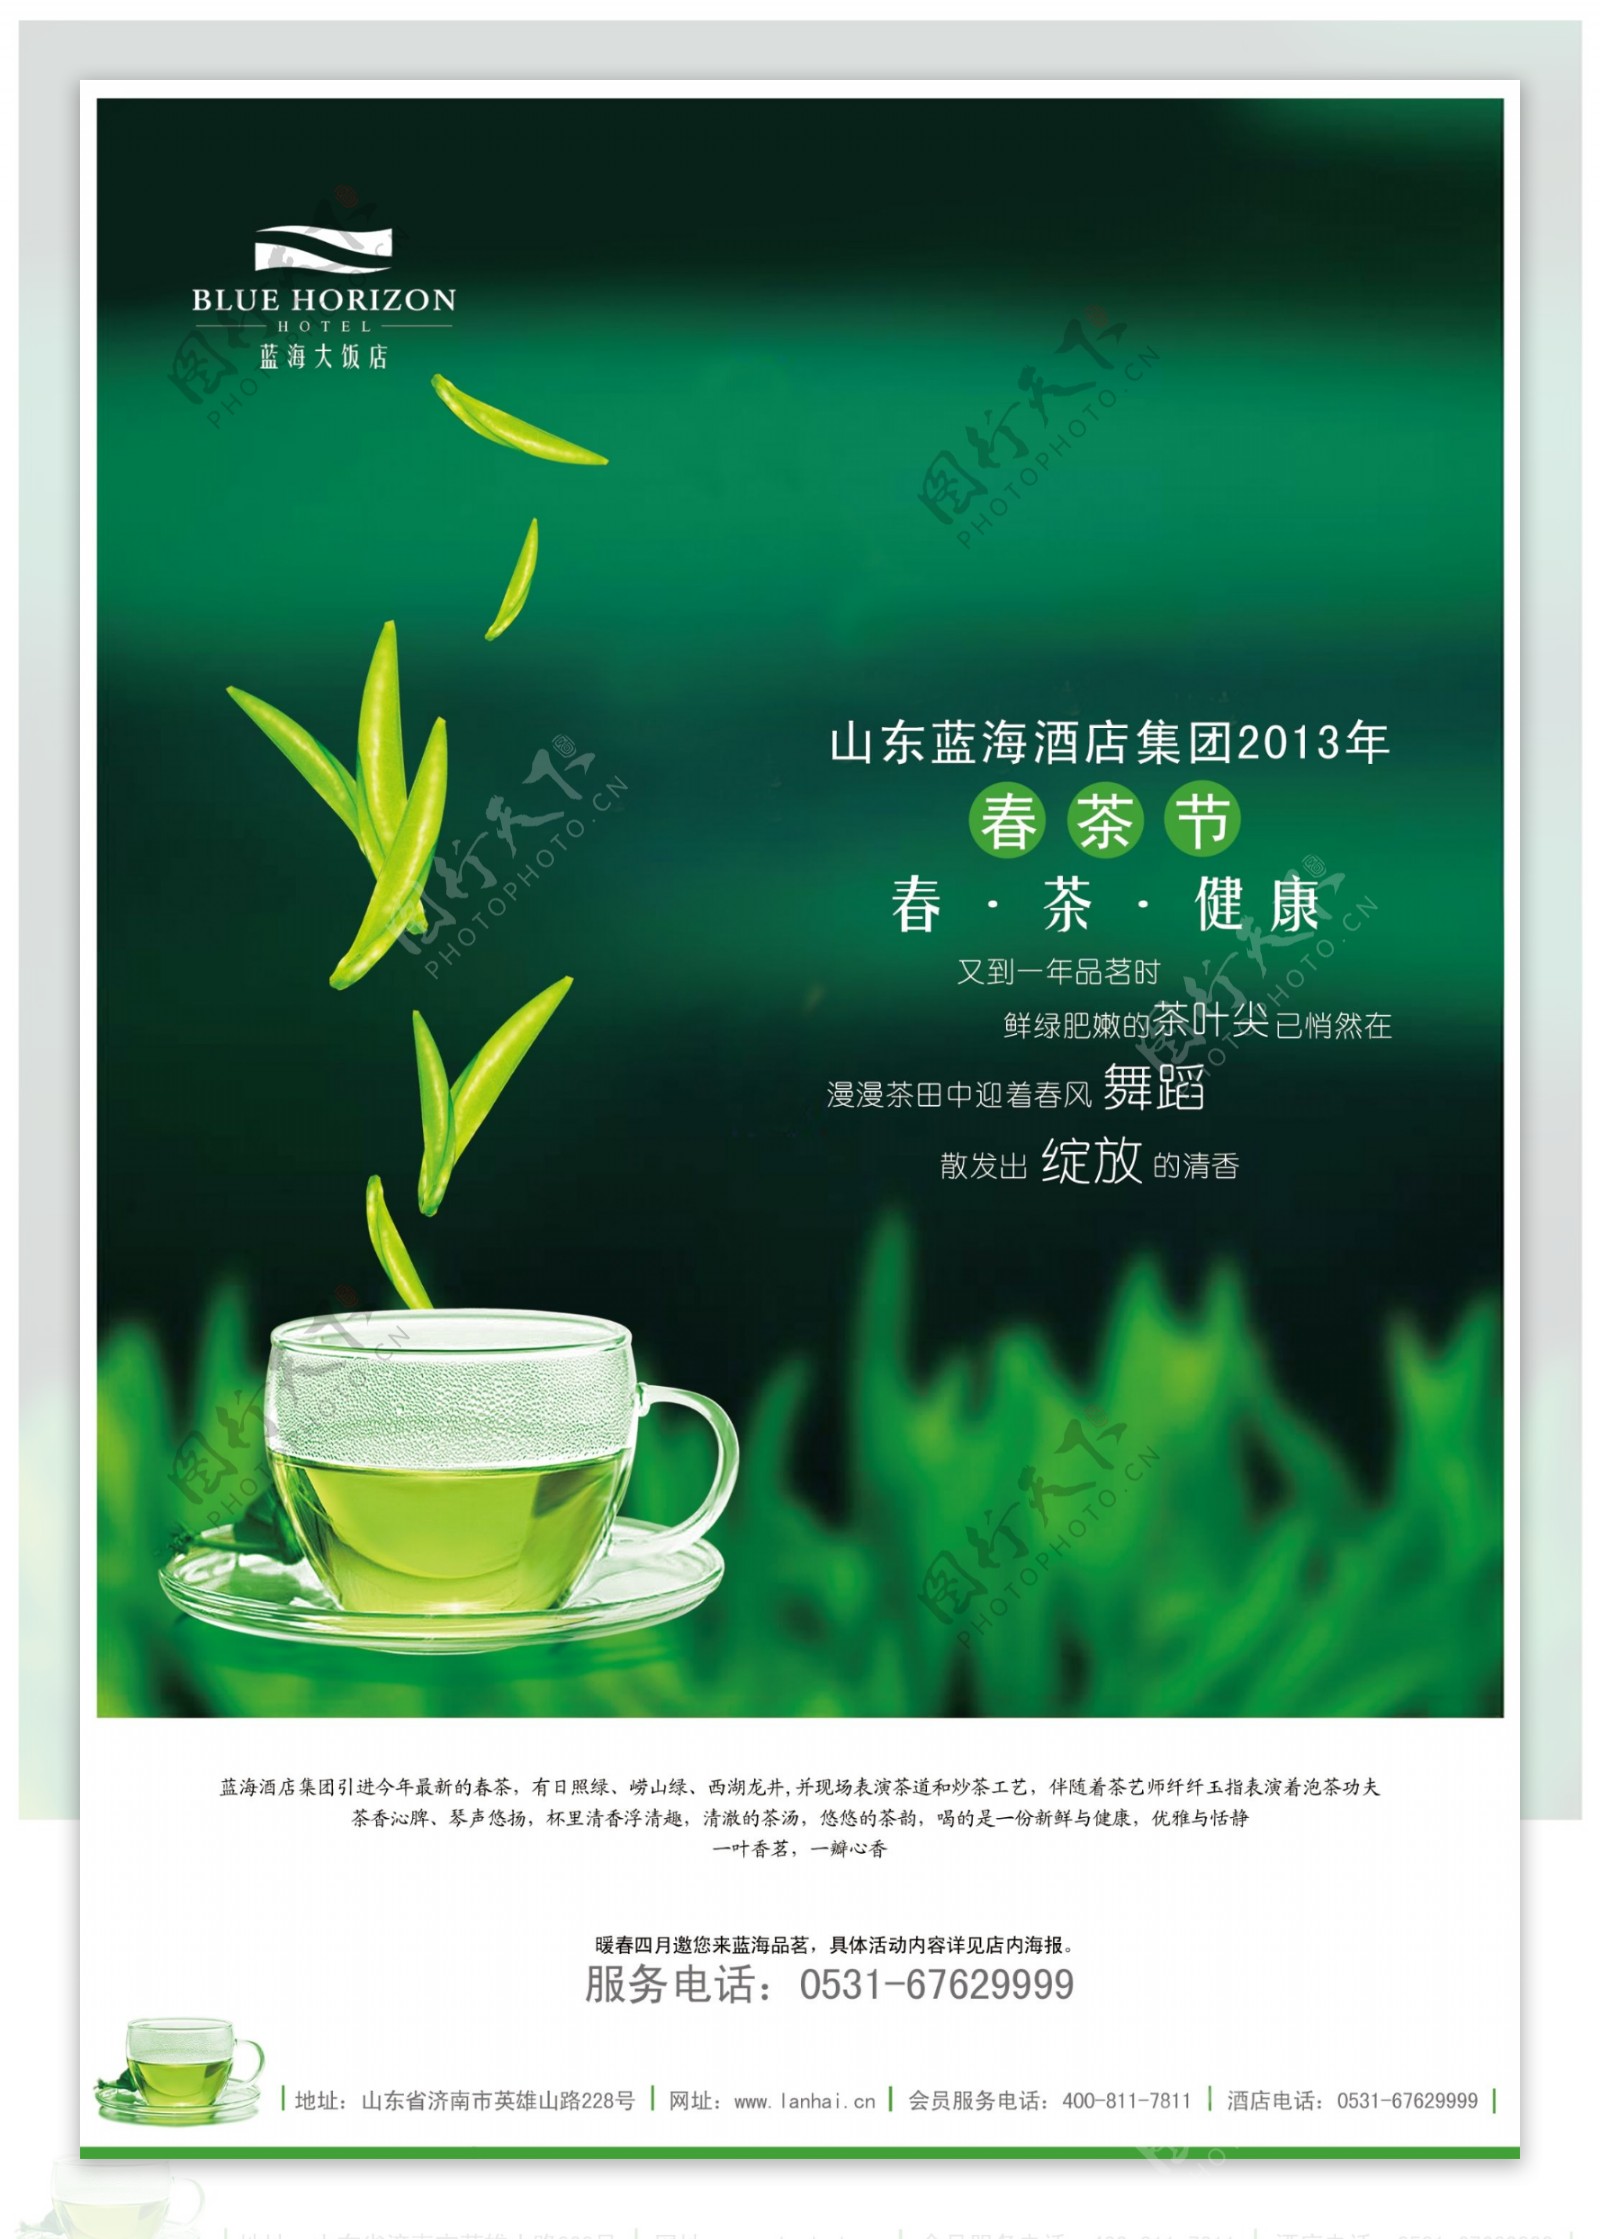 春茶节海报图片